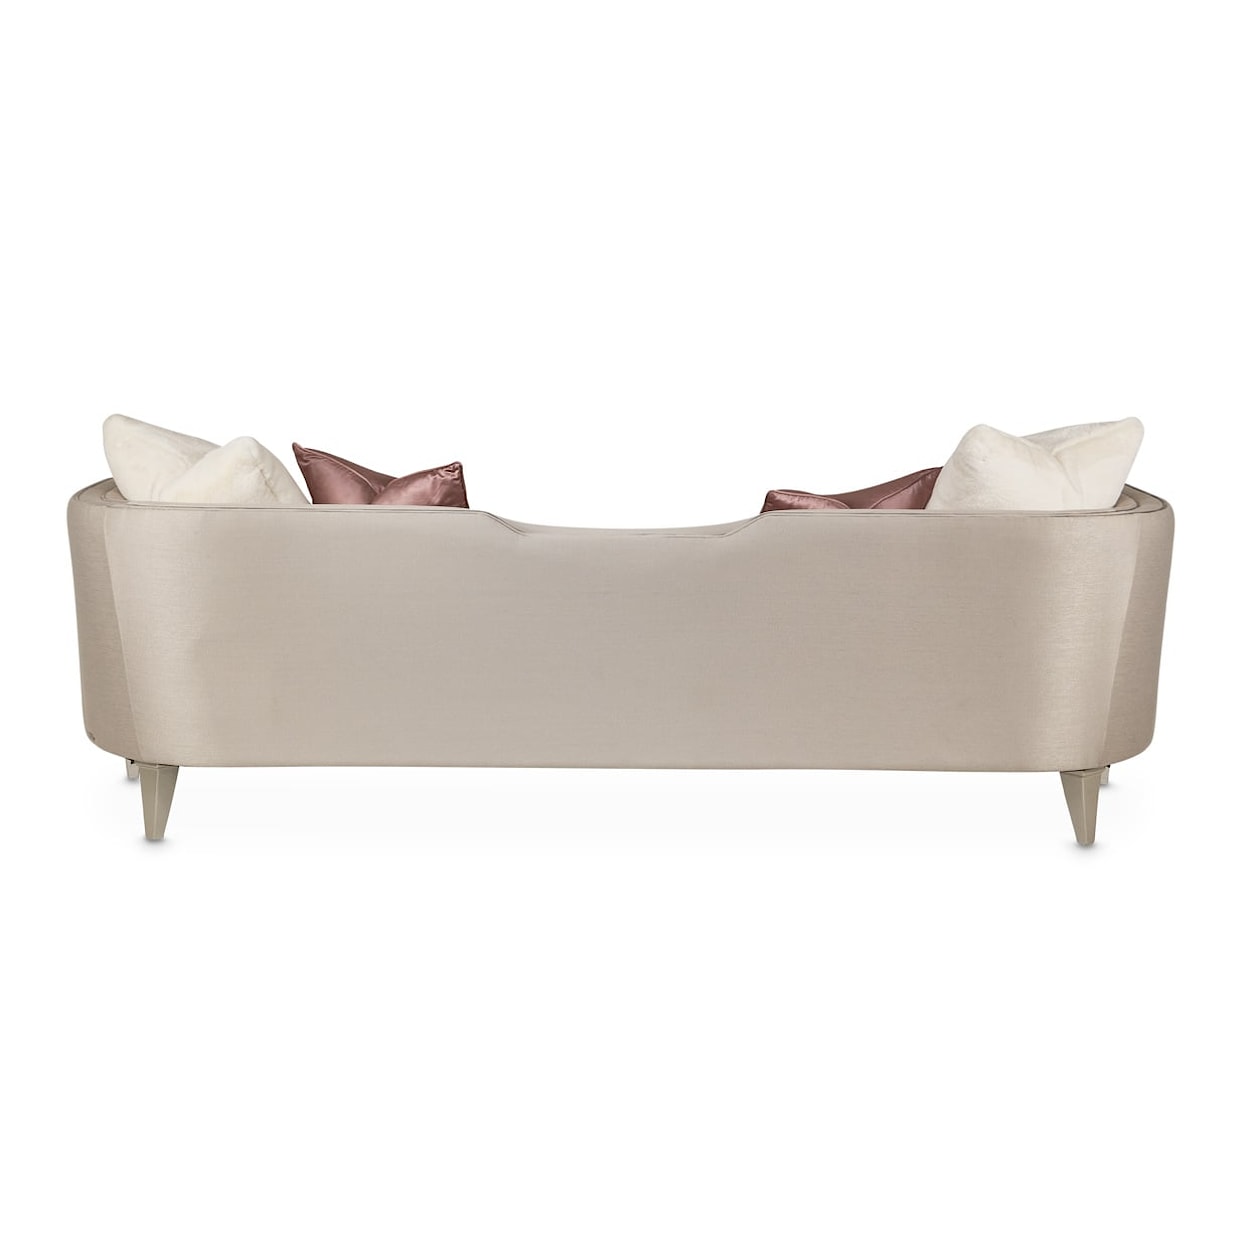 Michael Amini Linea Upholstered Sofa